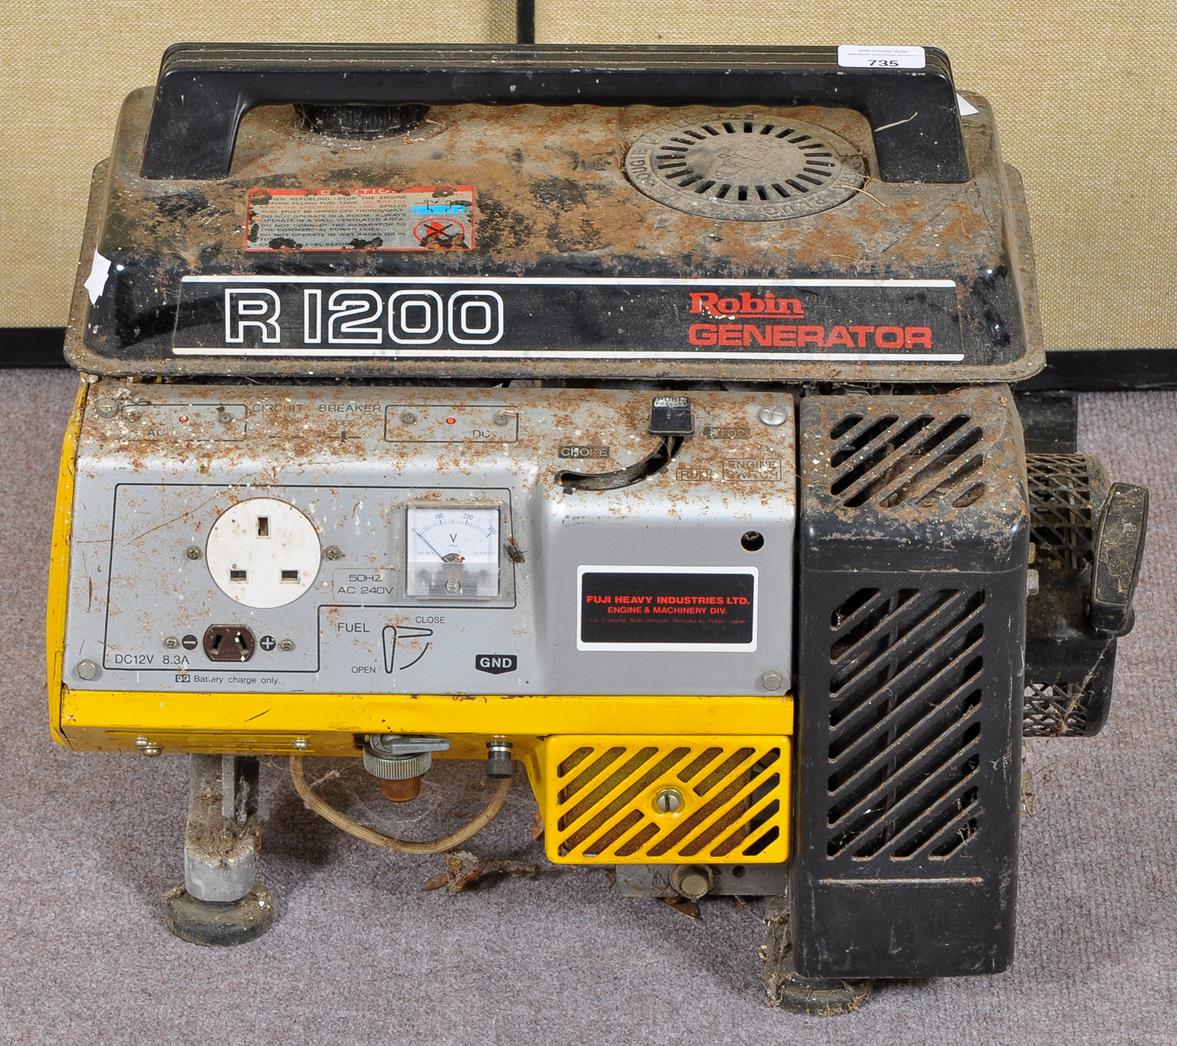 A R1200 Robin generator